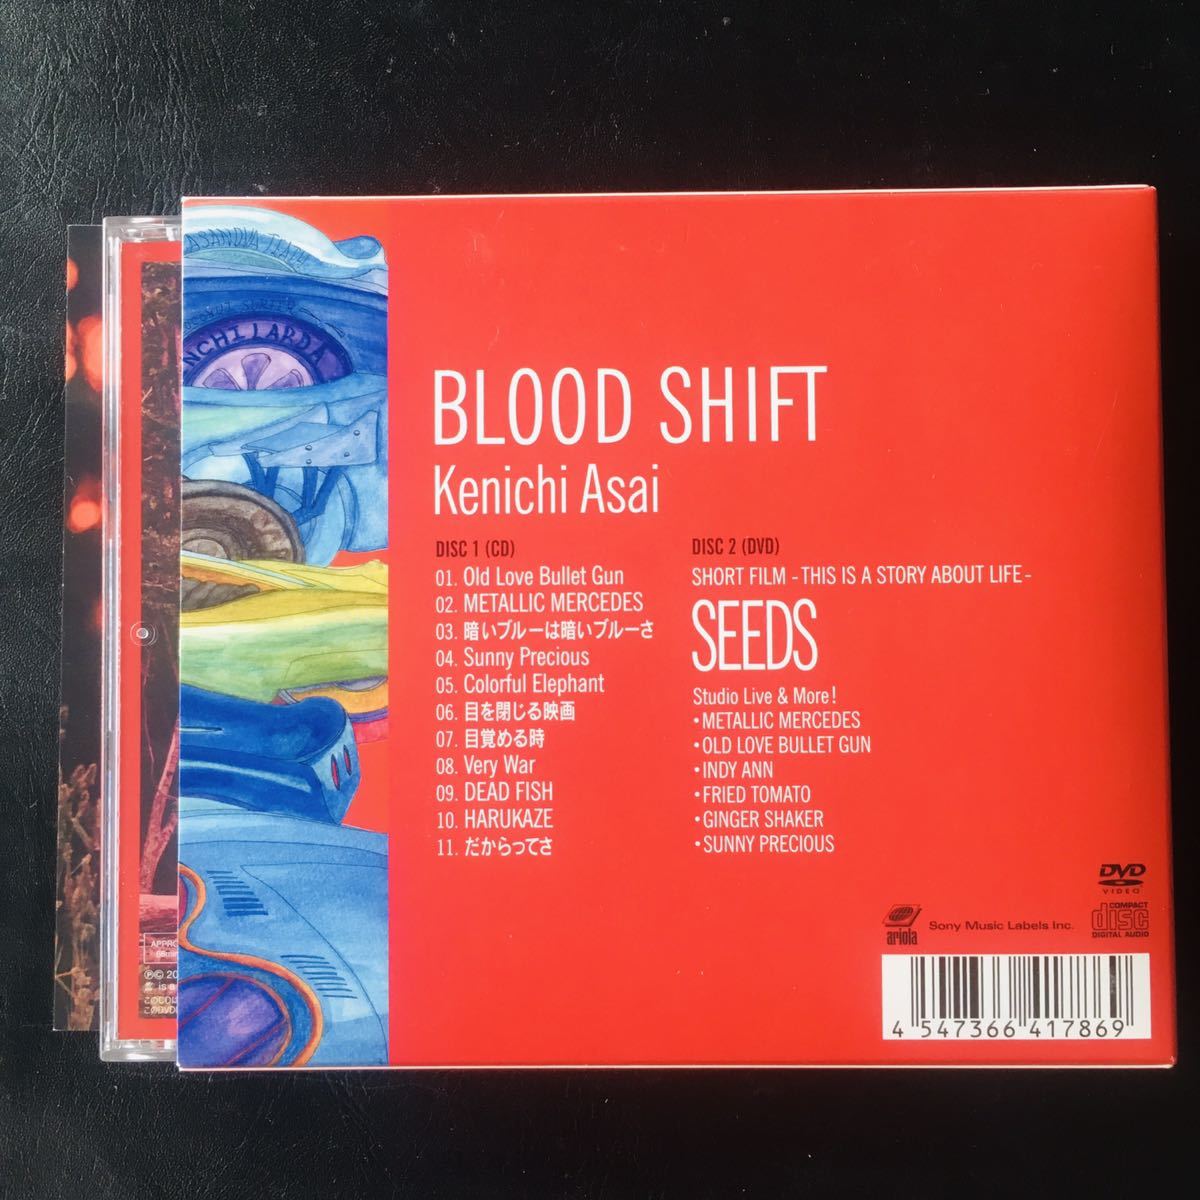 [CD]... один & THE INTERCHANGE KILLS / BLOOD SHIFT ( первый раз производство ограничение запись DVD имеется ) Ben ji-, средний хвост Kentarou, cut z**